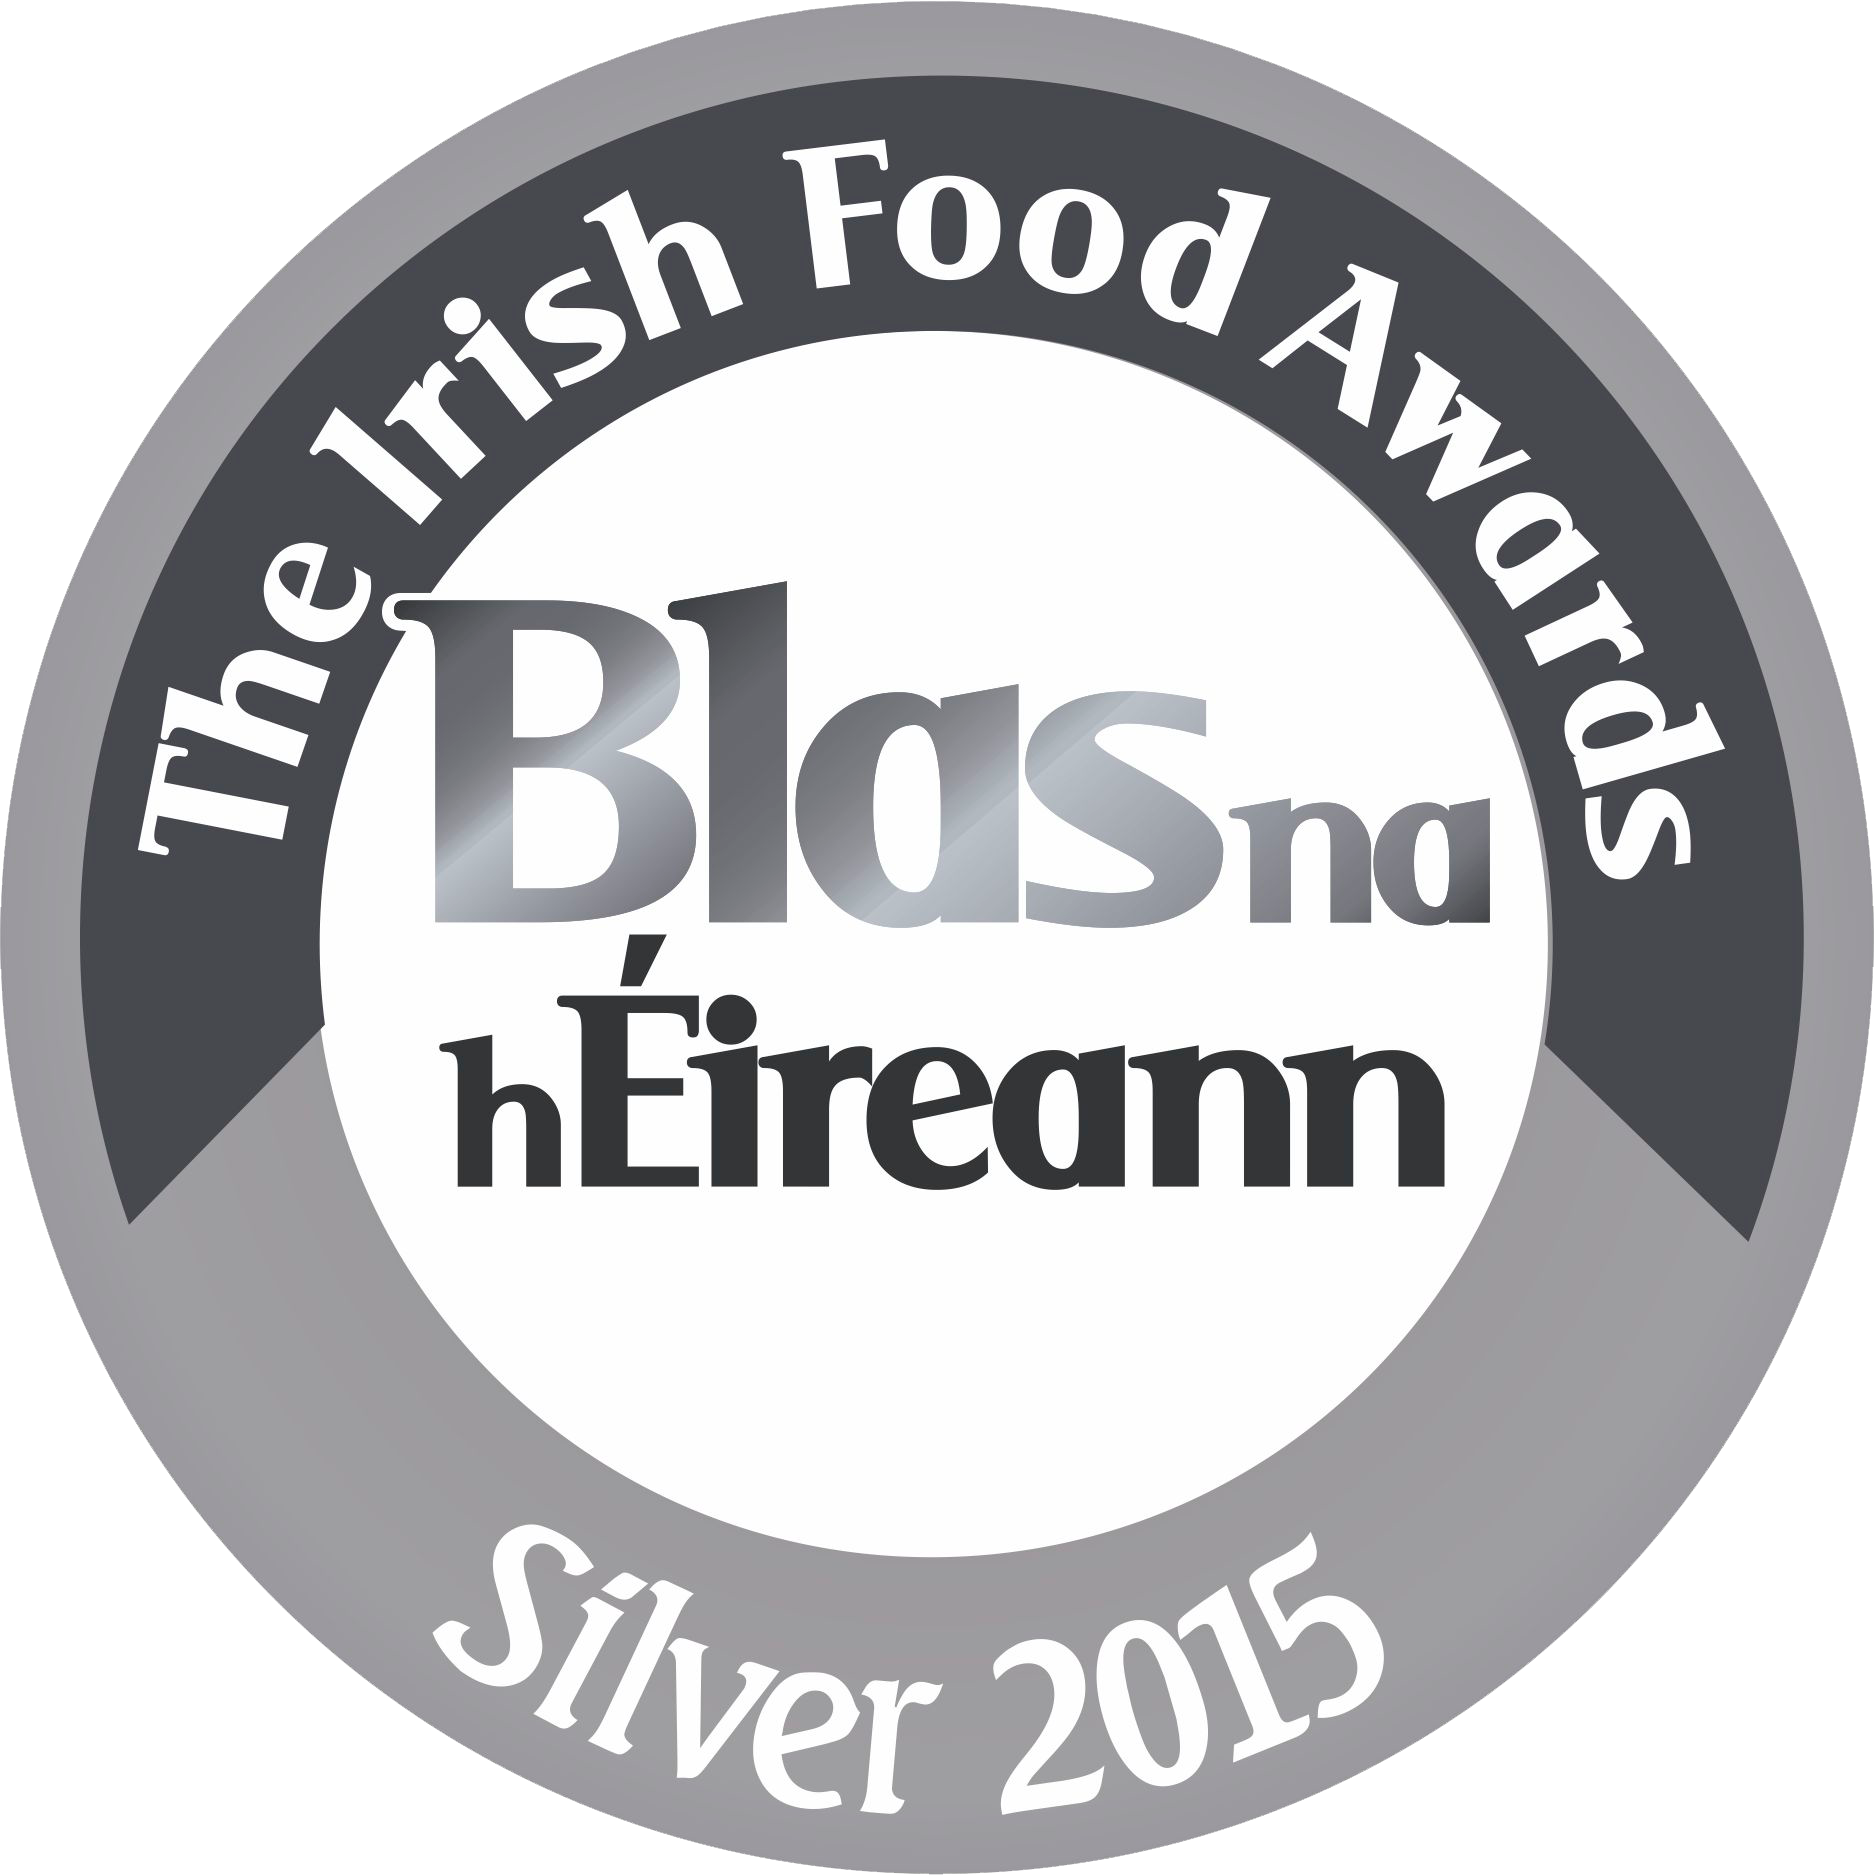 The Irish Food Awards 